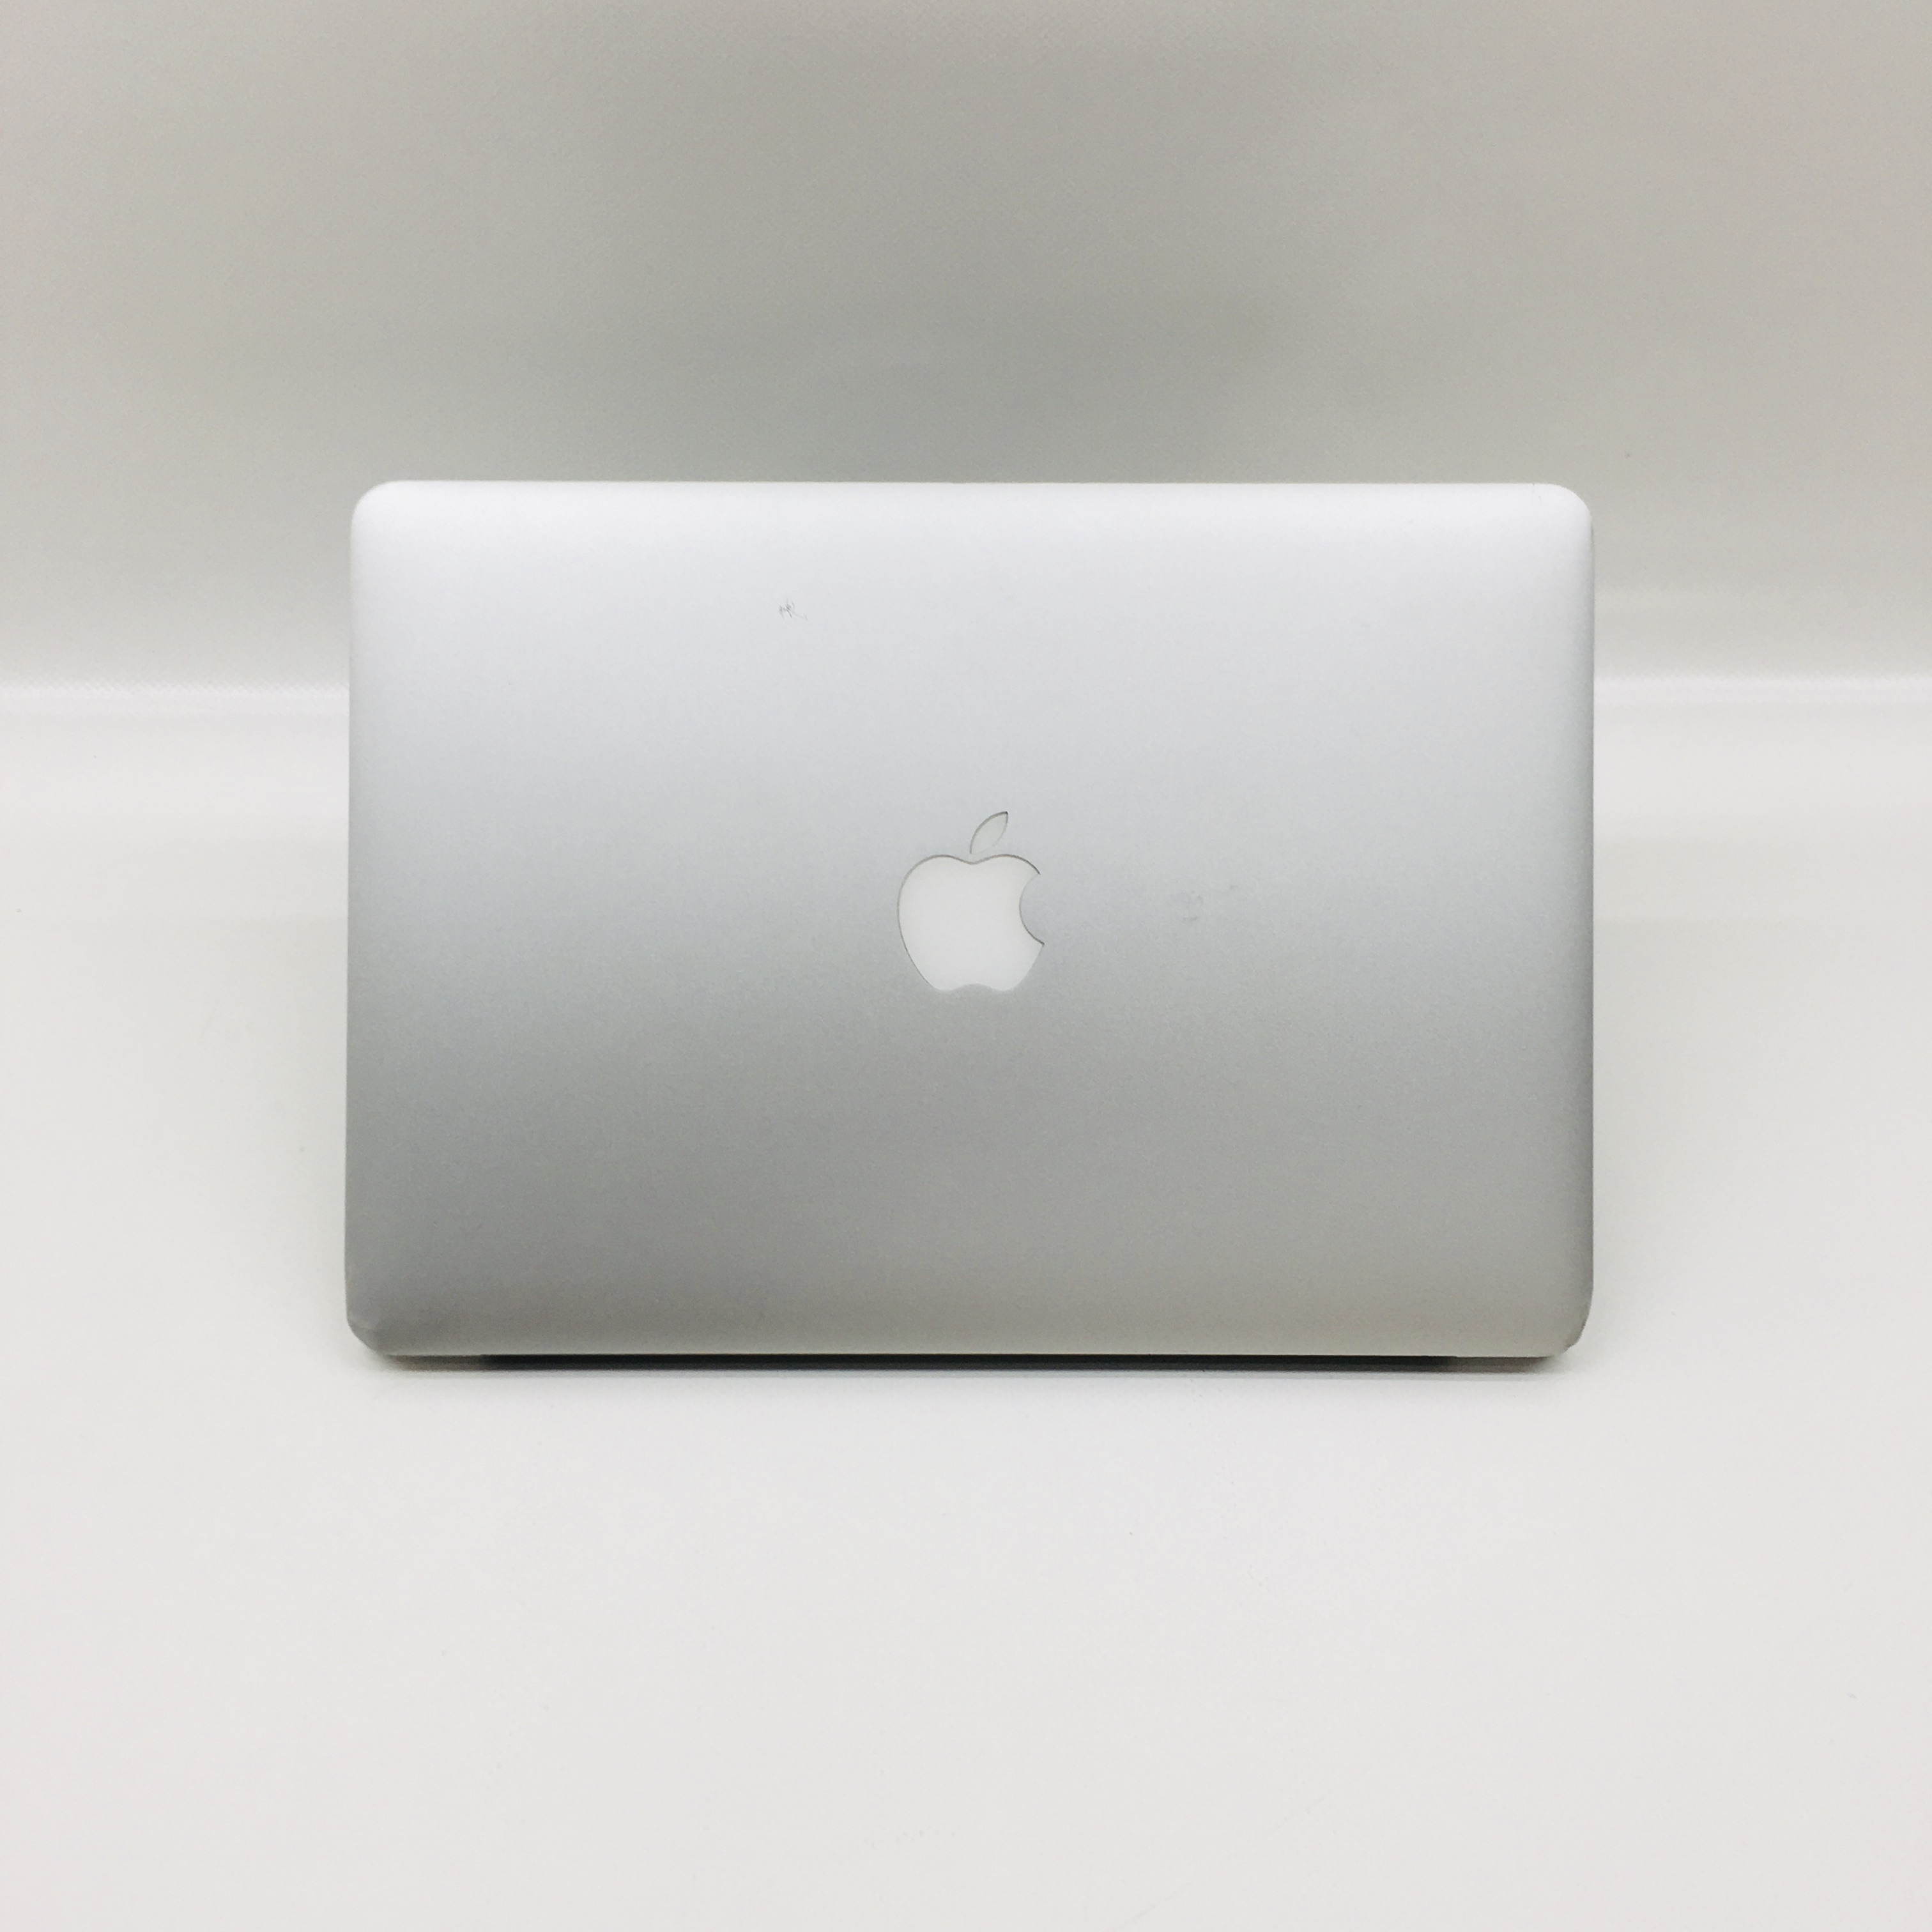 MacBook Air 13" Mid 2013 (Intel Core i5 1.3 GHz 4 GB RAM 128 GB SSD), Intel Core i5 1.3 GHz, 4 GB RAM, 128 GB SSD, image 4